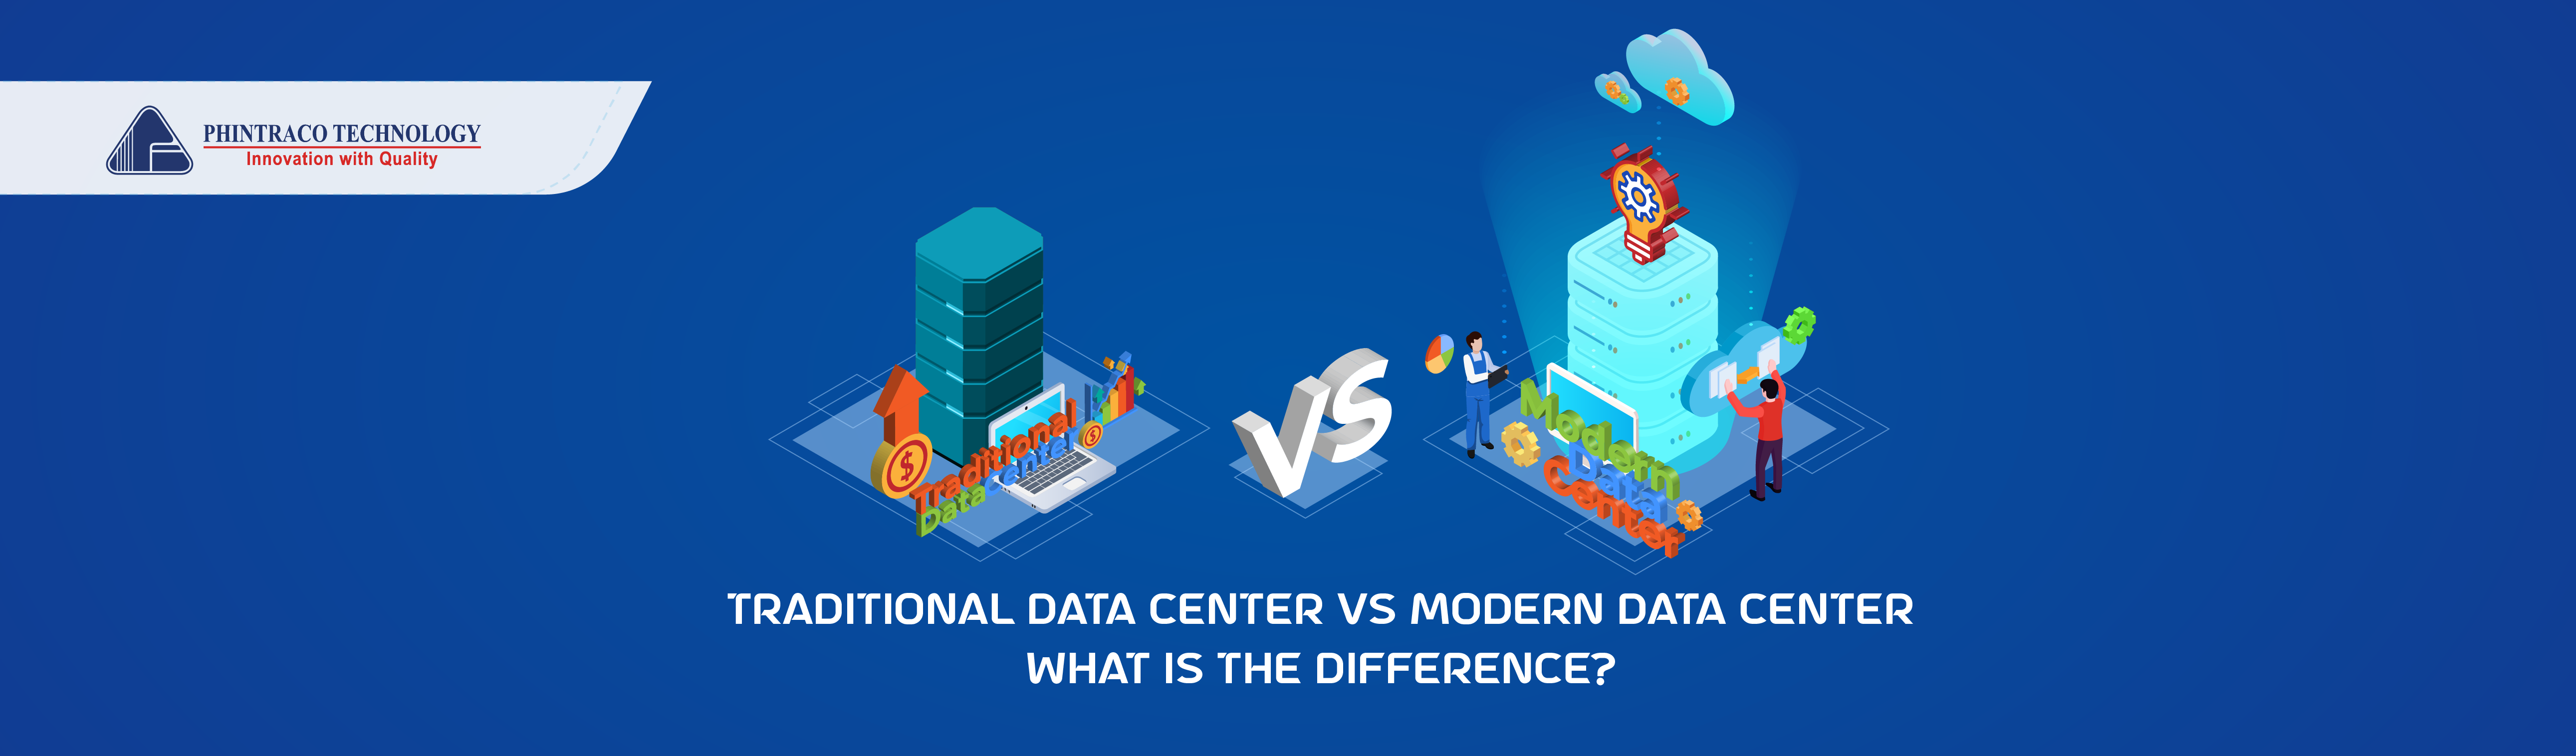 traditional data center vs modern data center